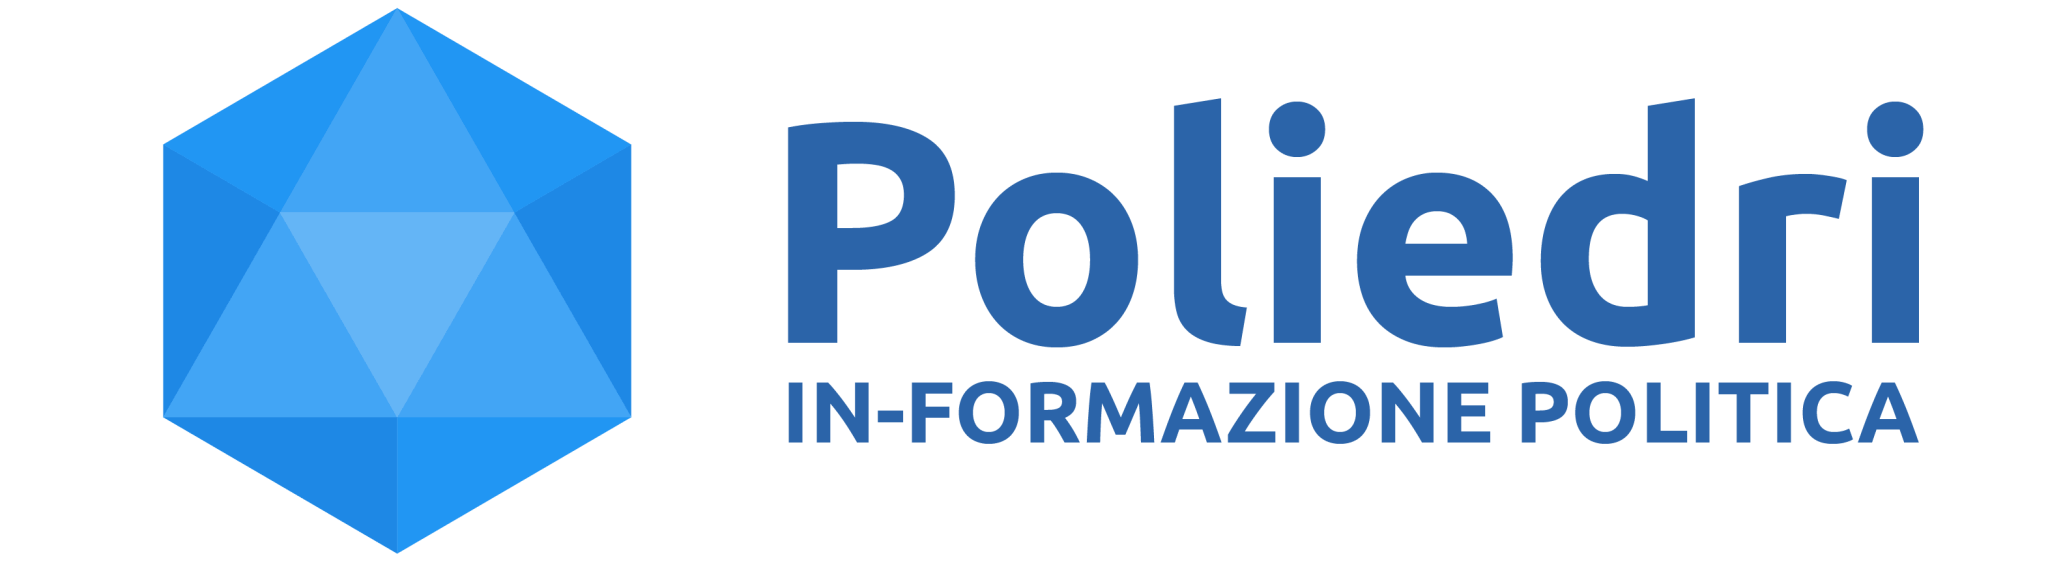 logo poliedri informazione politica